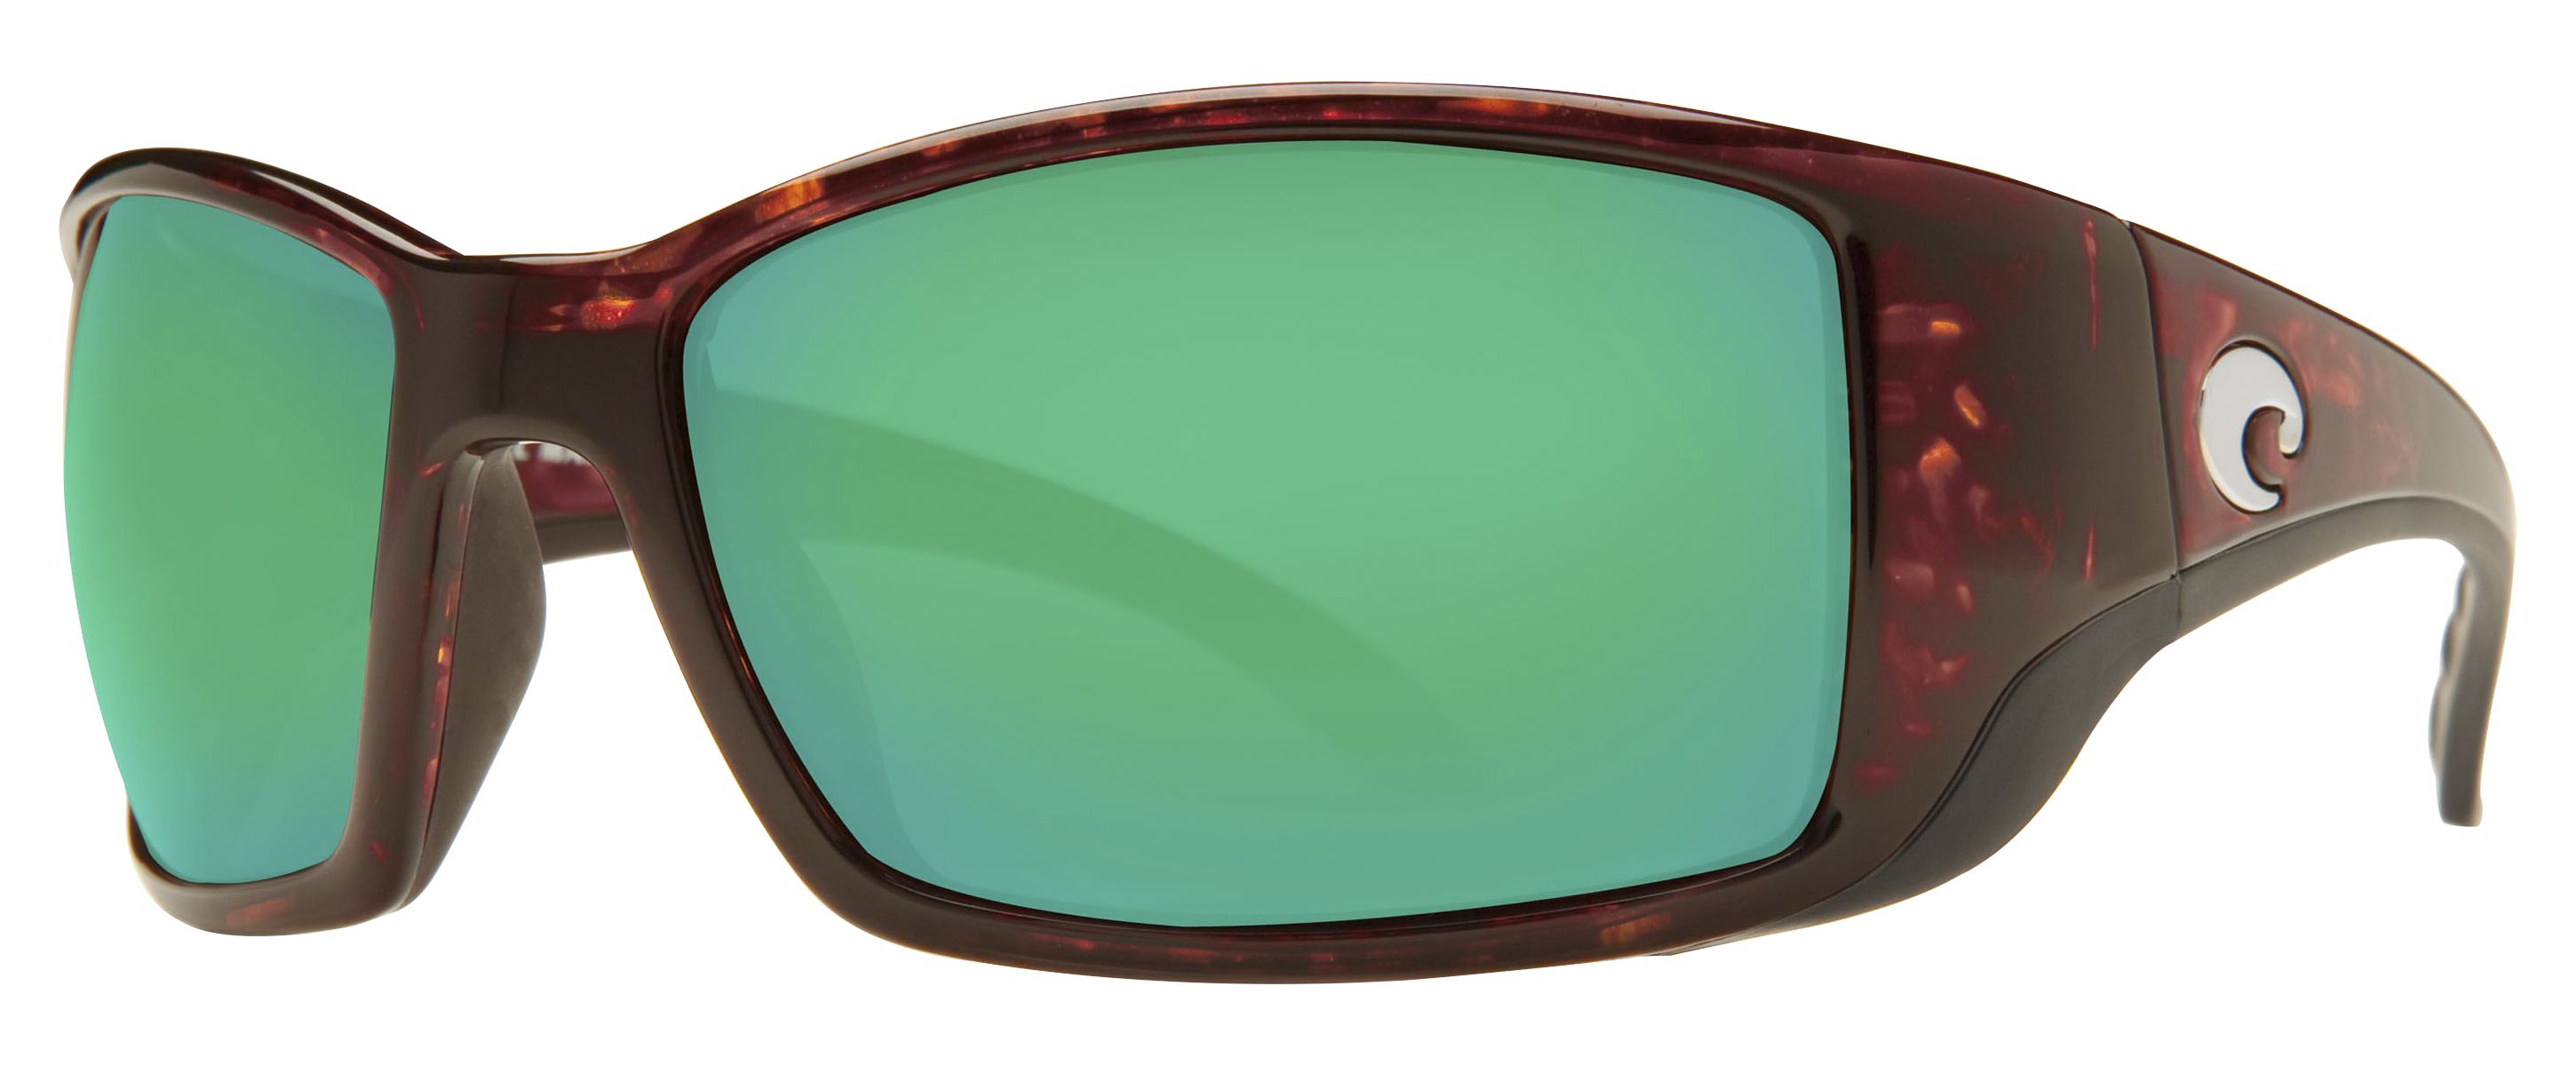 Costa Blackfin 580P Polarized Sunglasses - Tortoise+Black/Green Mirror -  Costa Del Mar